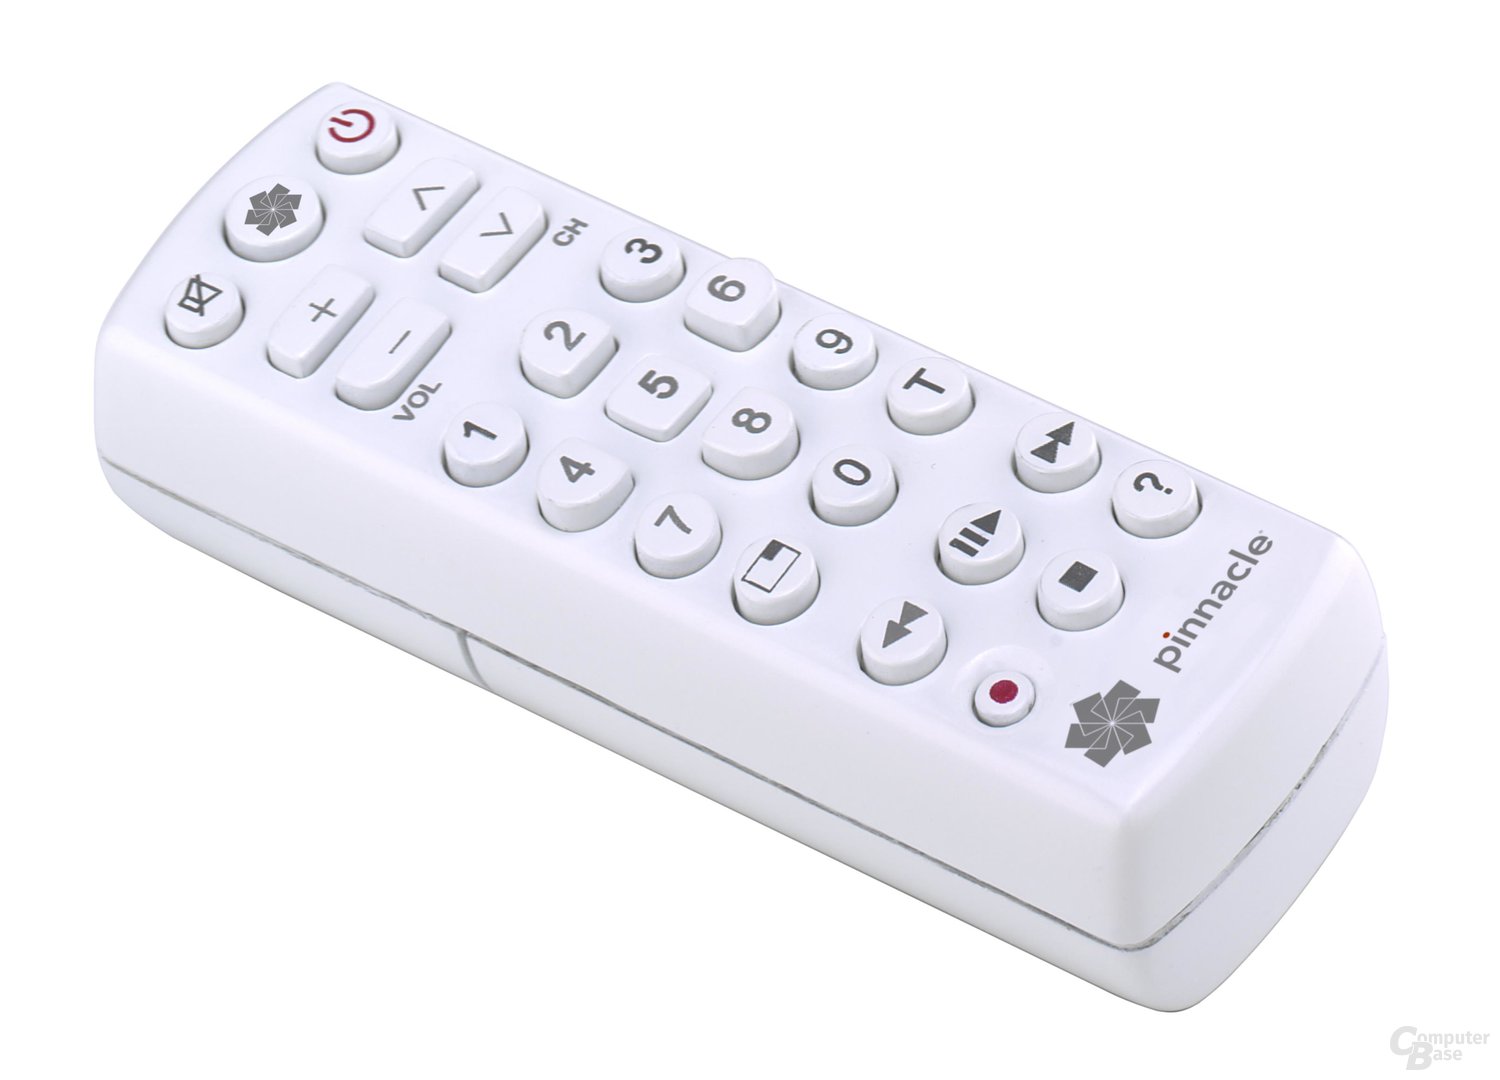 Pinnacle PCTV DVB-T Pro USB Remote